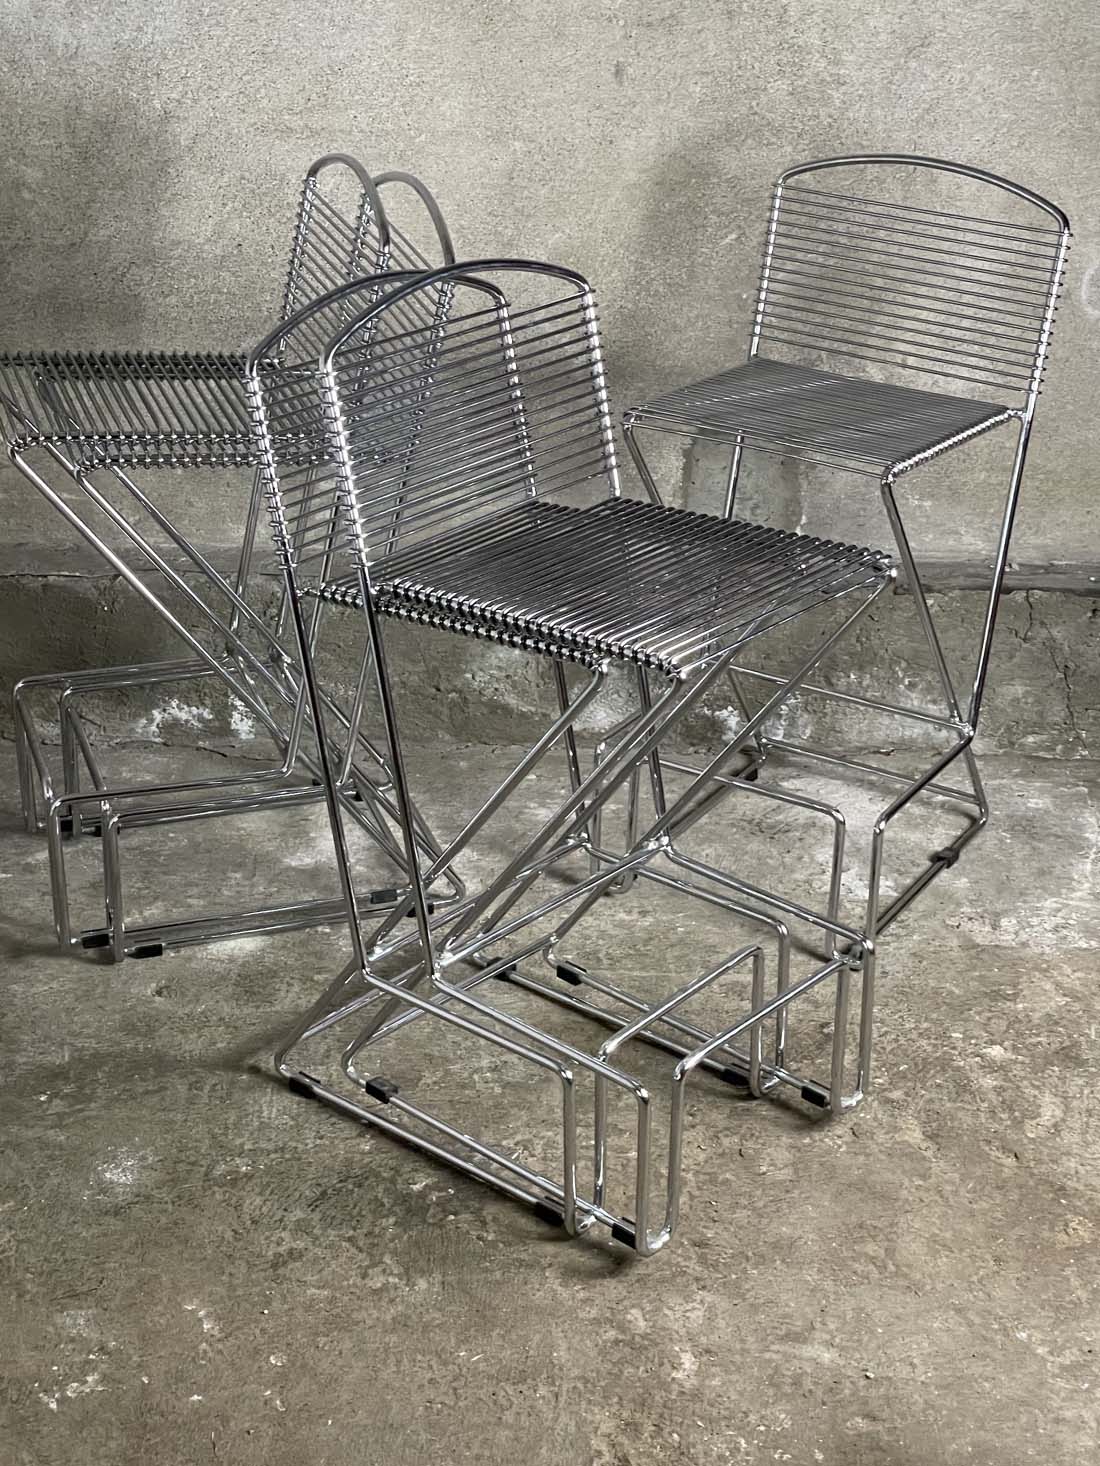 stołki barowe w stylu Tilla Behrensa, chromowane, Schalubach, Niemcy, krzeslarz